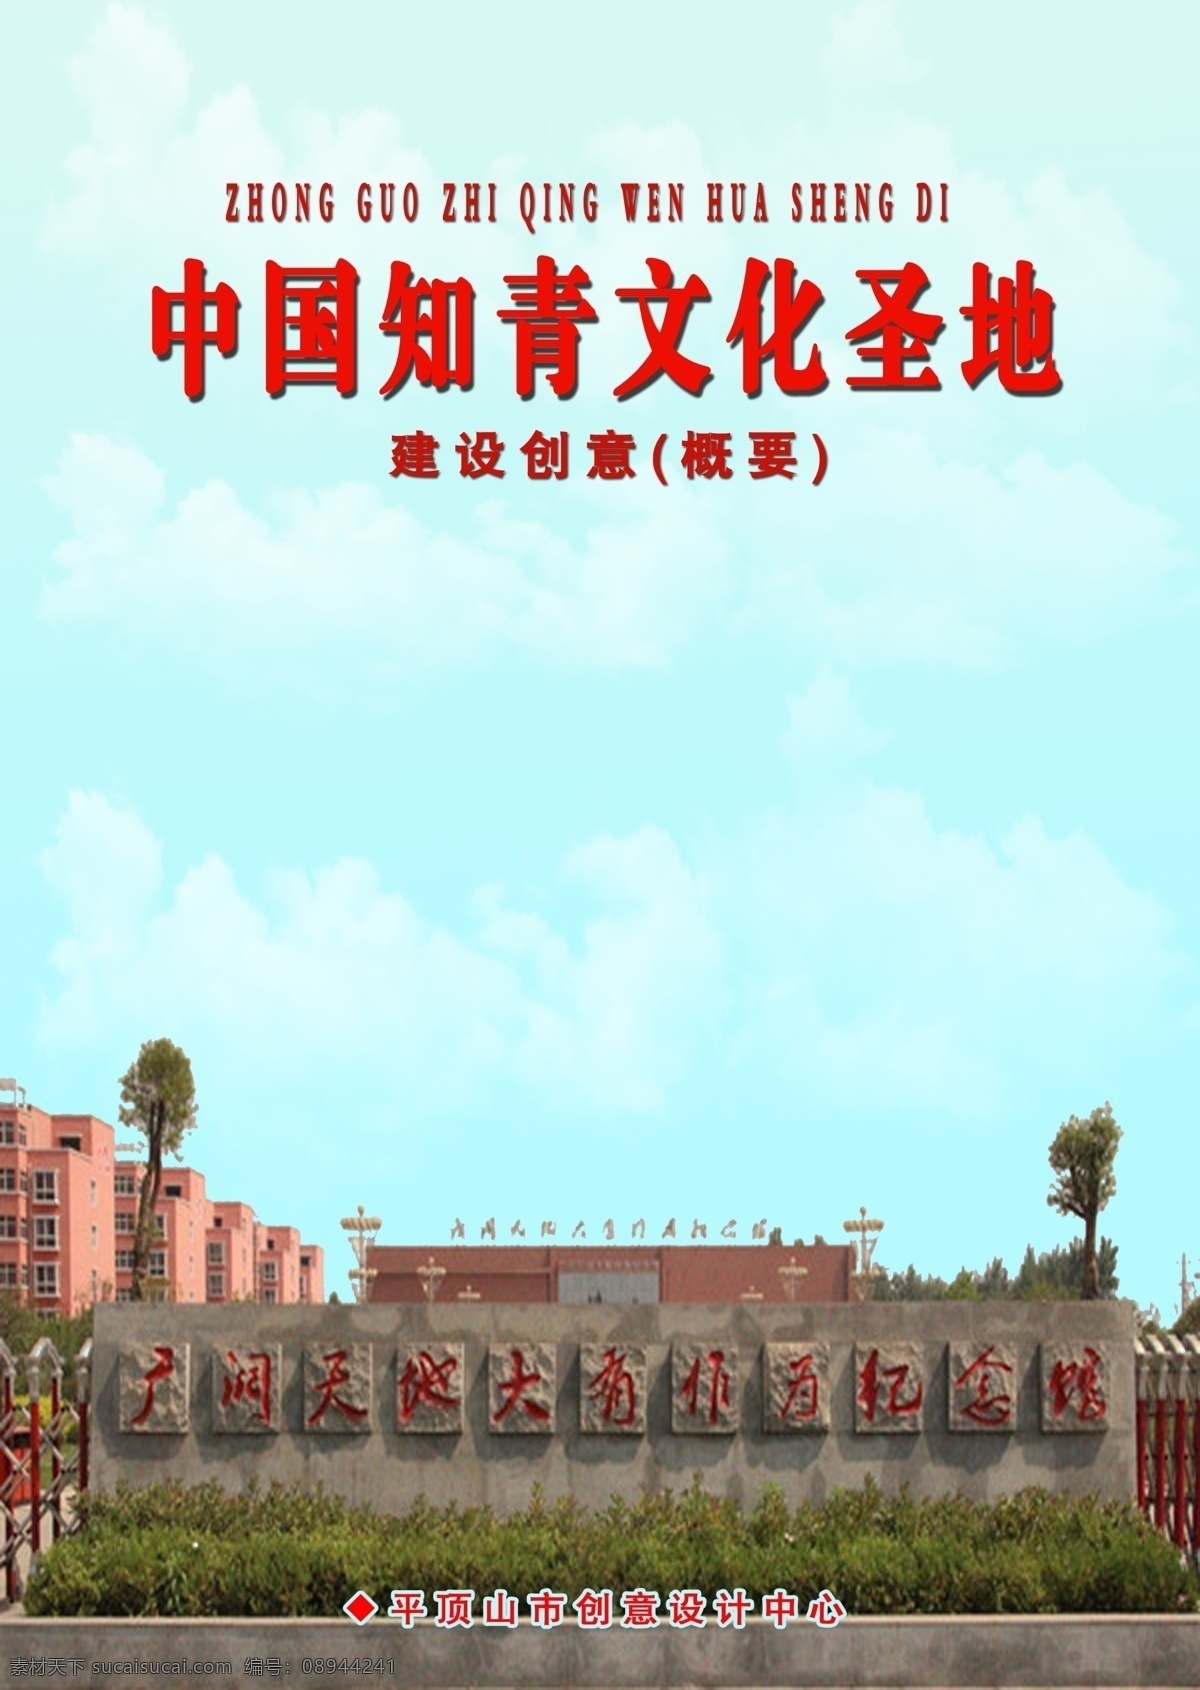 中国 知青 文化 圣地 建设 创意 郏县 青色 天蓝色